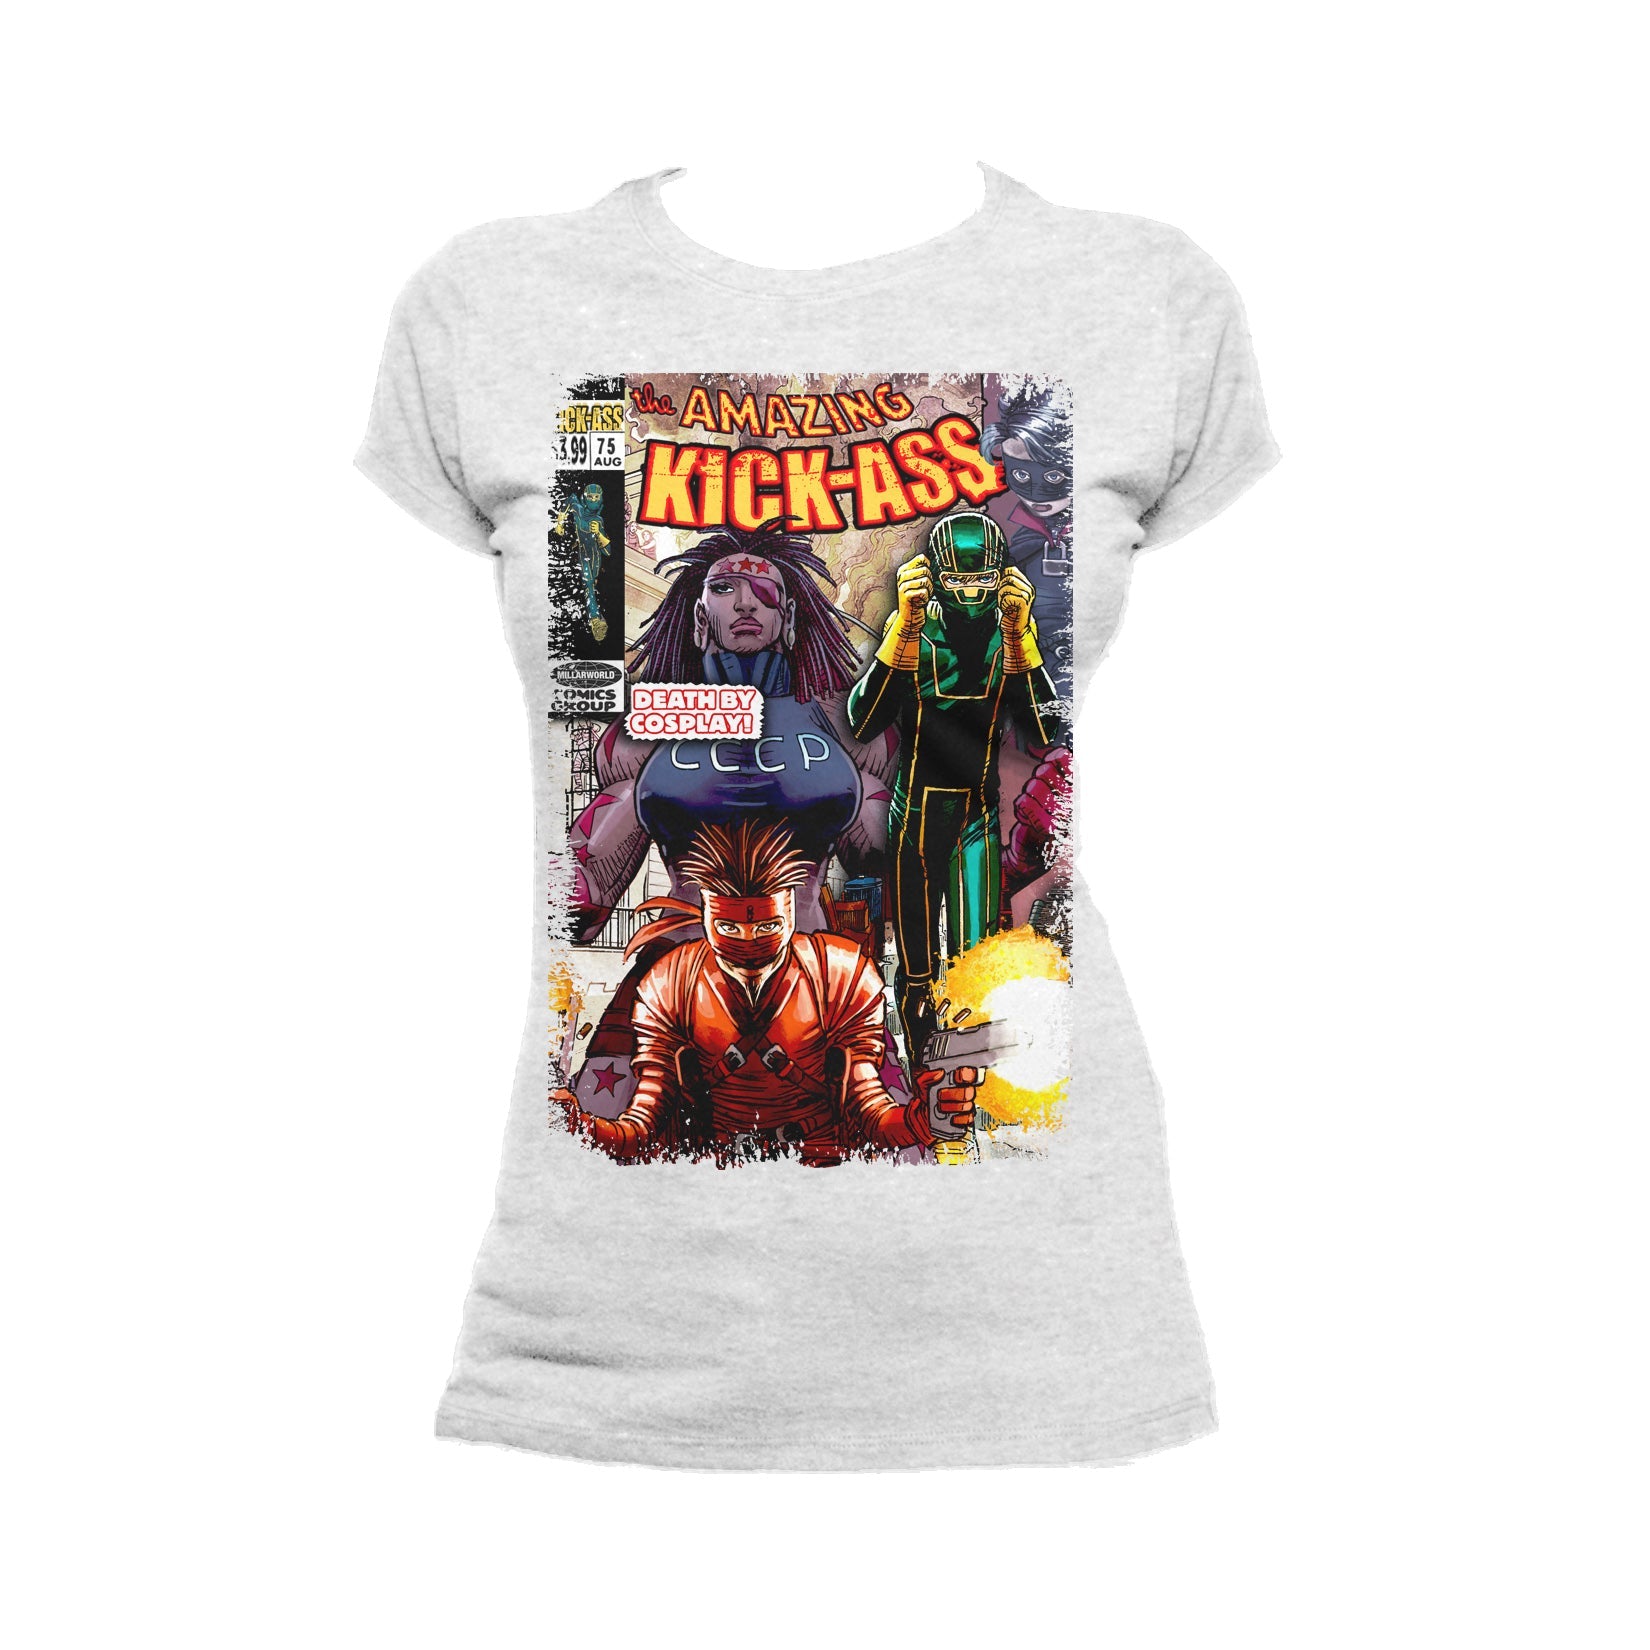 Kick-Ass Remix Cover Amazing Official Women's T-Shirt ()